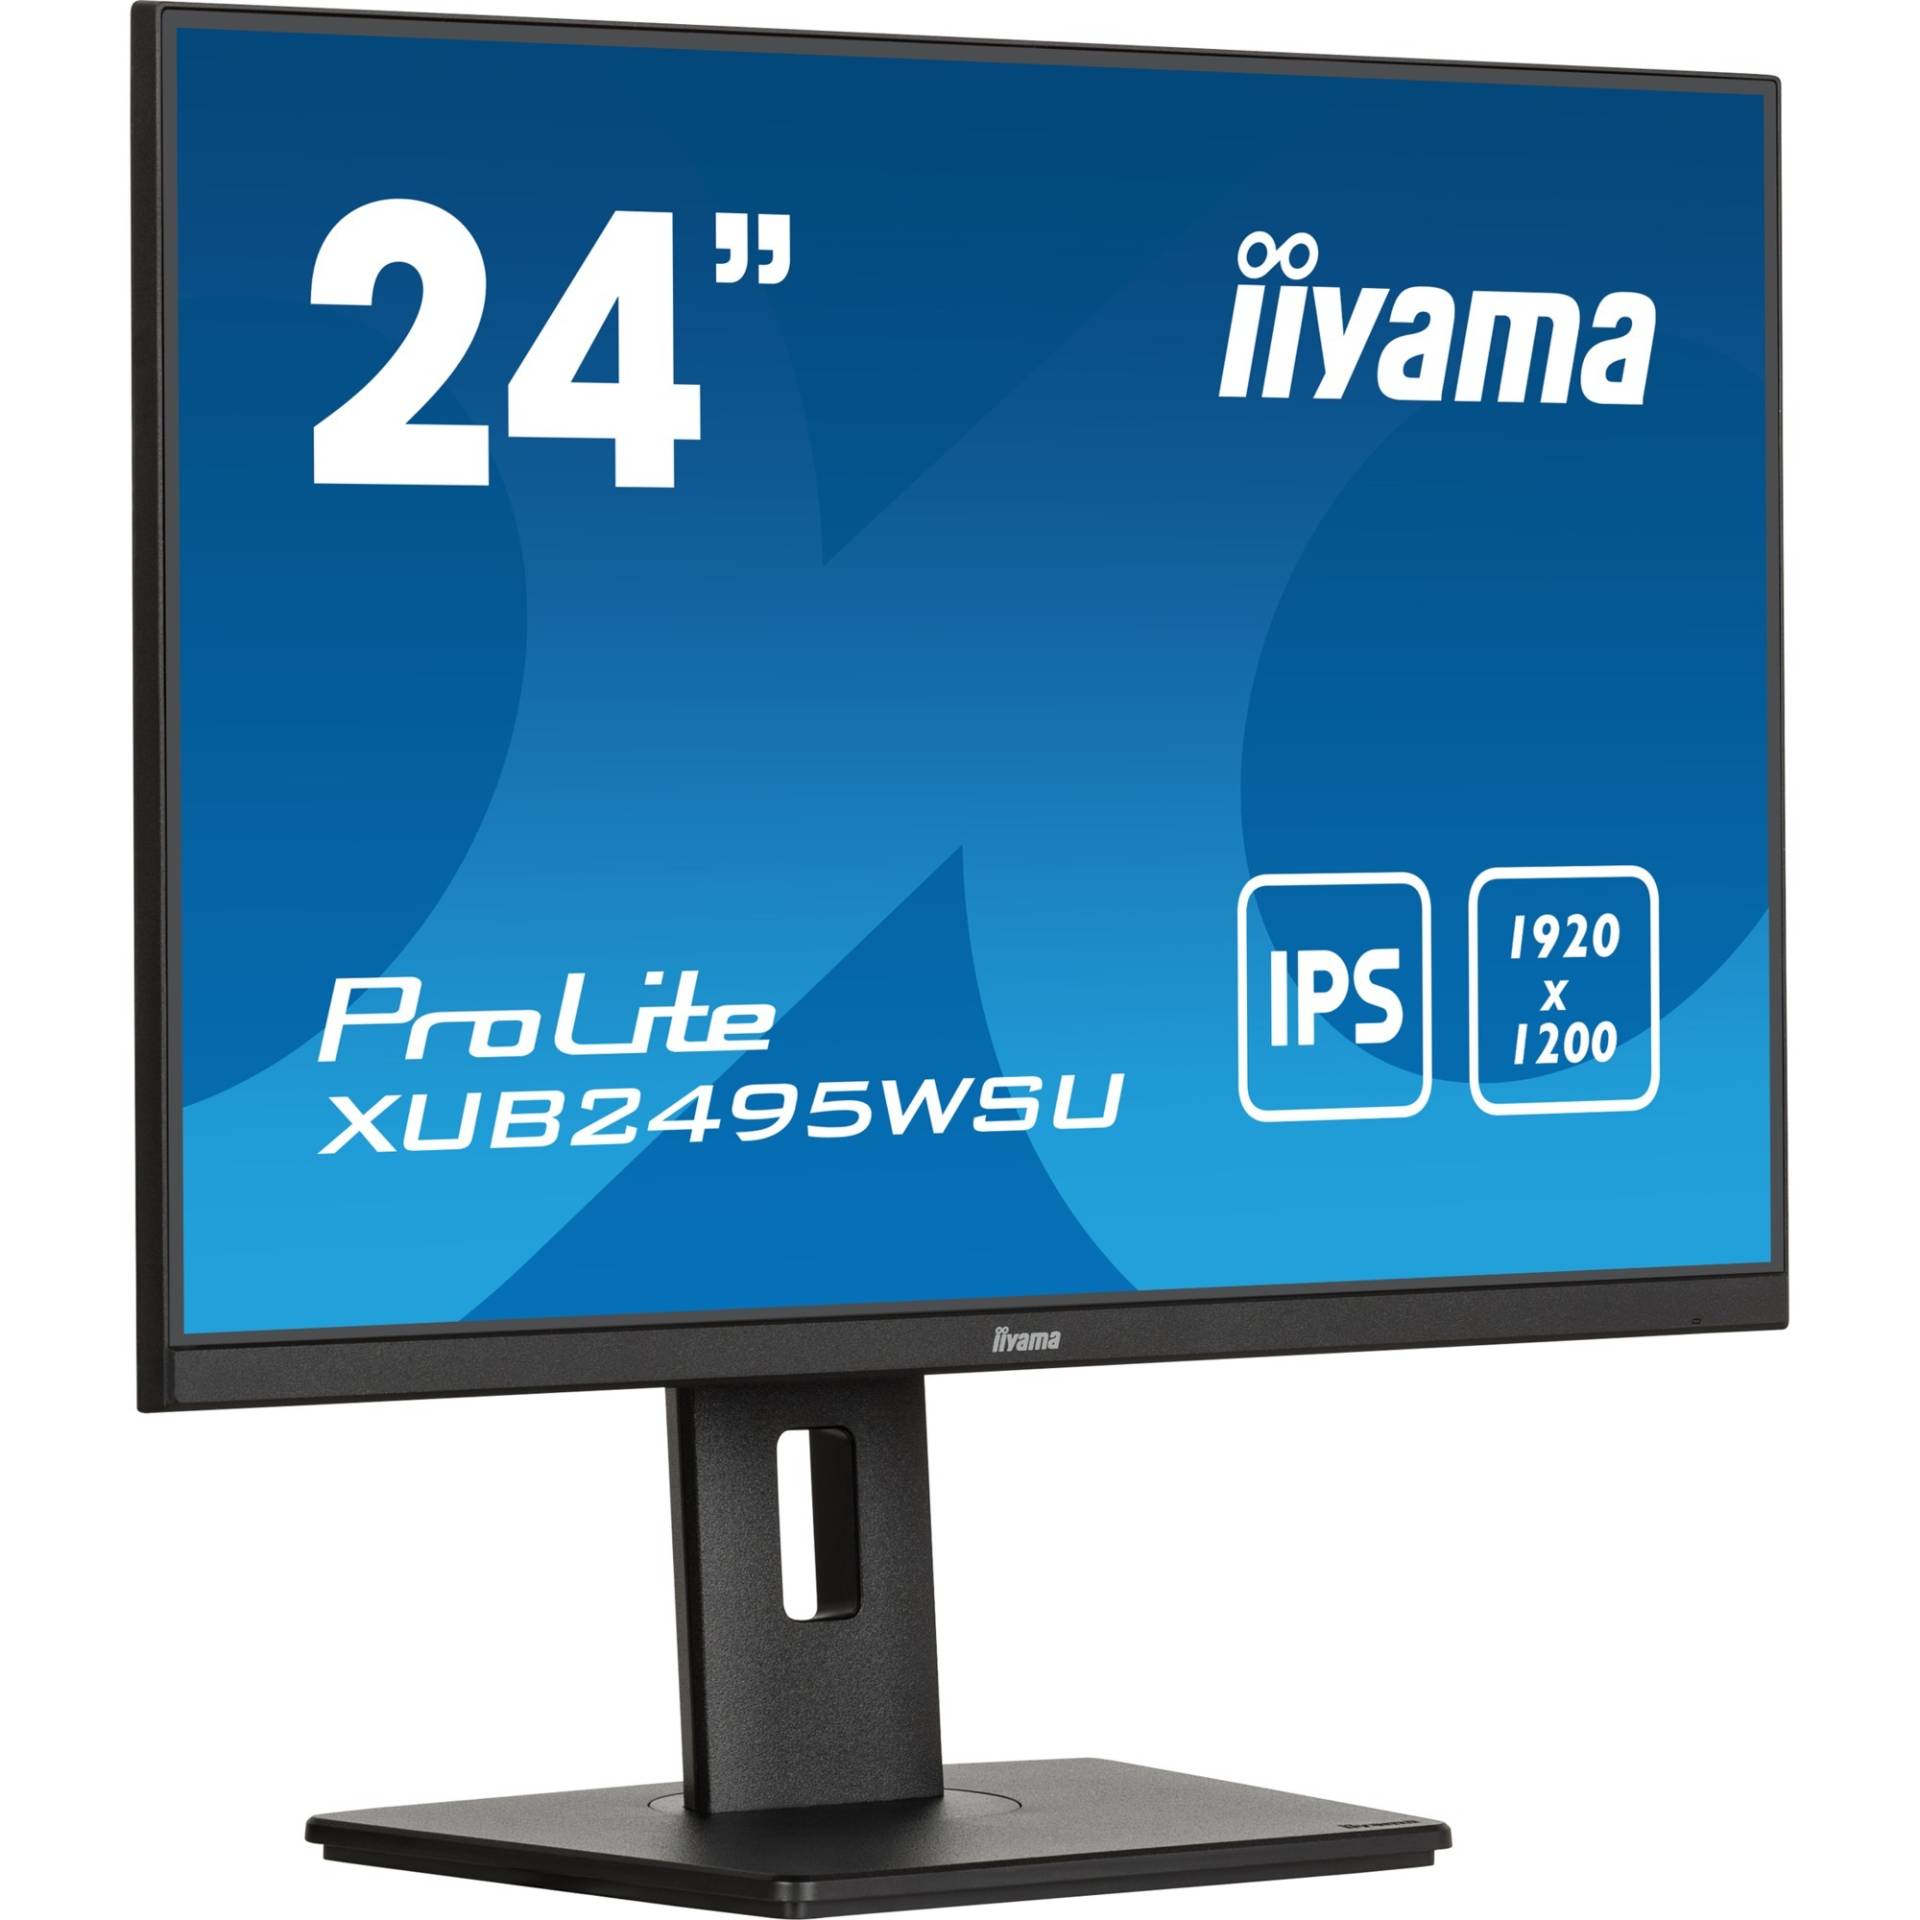 ProLite XUB2495WSU-B7, LED-Monitor von Iiyama